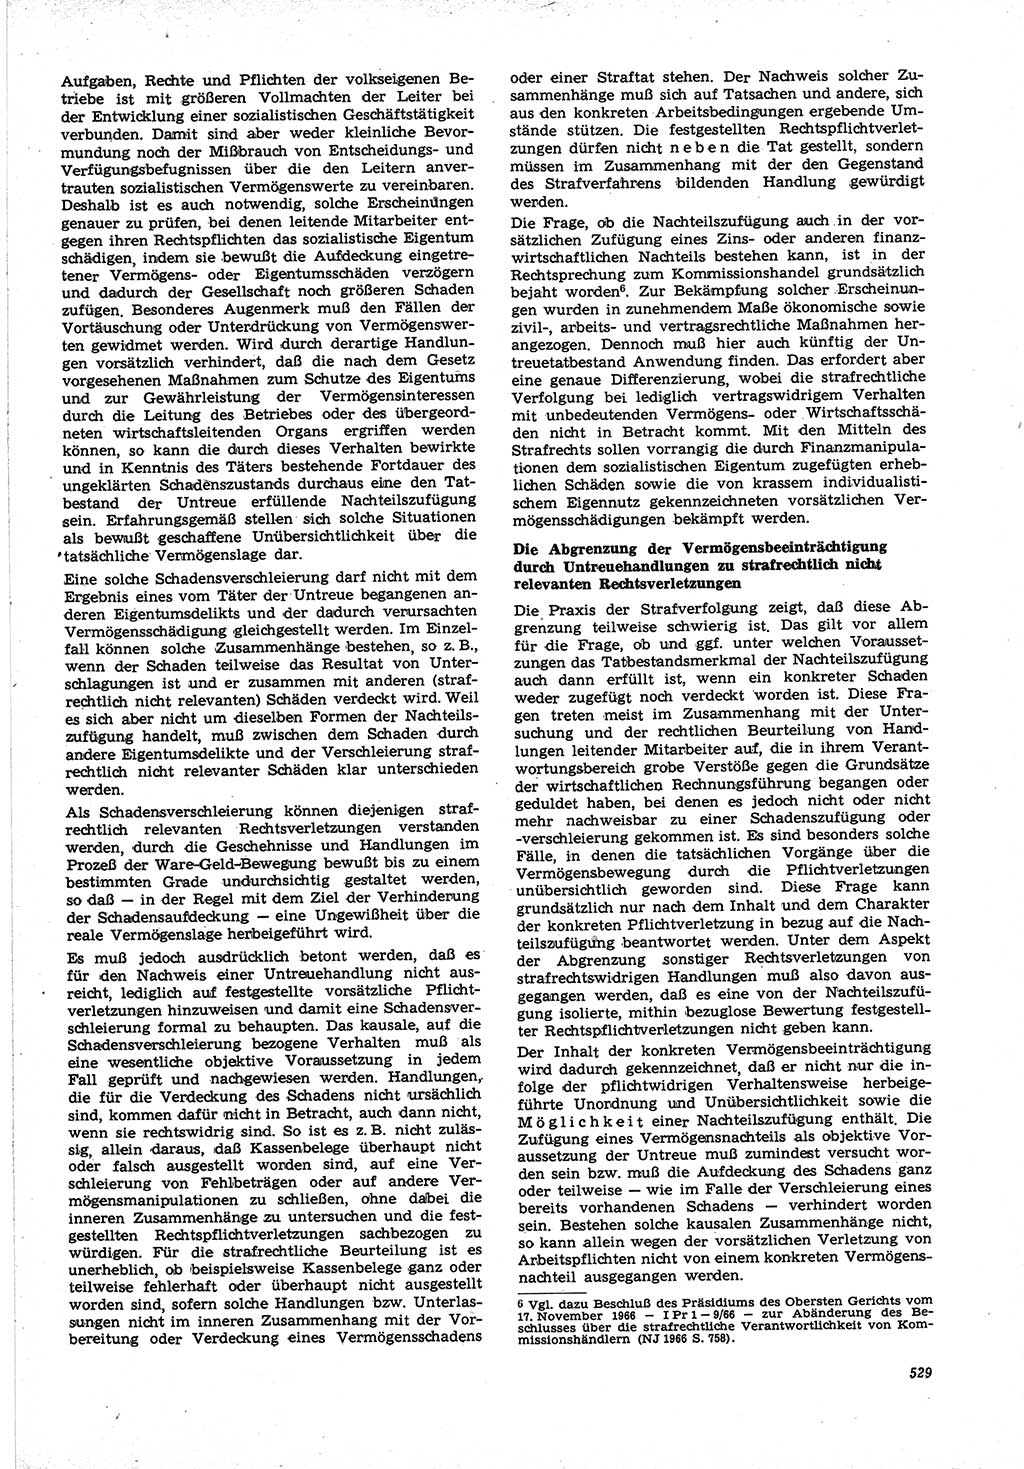 Neue Justiz (NJ), Zeitschrift für Recht und Rechtswissenschaft [Deutsche Demokratische Republik (DDR)], 21. Jahrgang 1967, Seite 529 (NJ DDR 1967, S. 529)